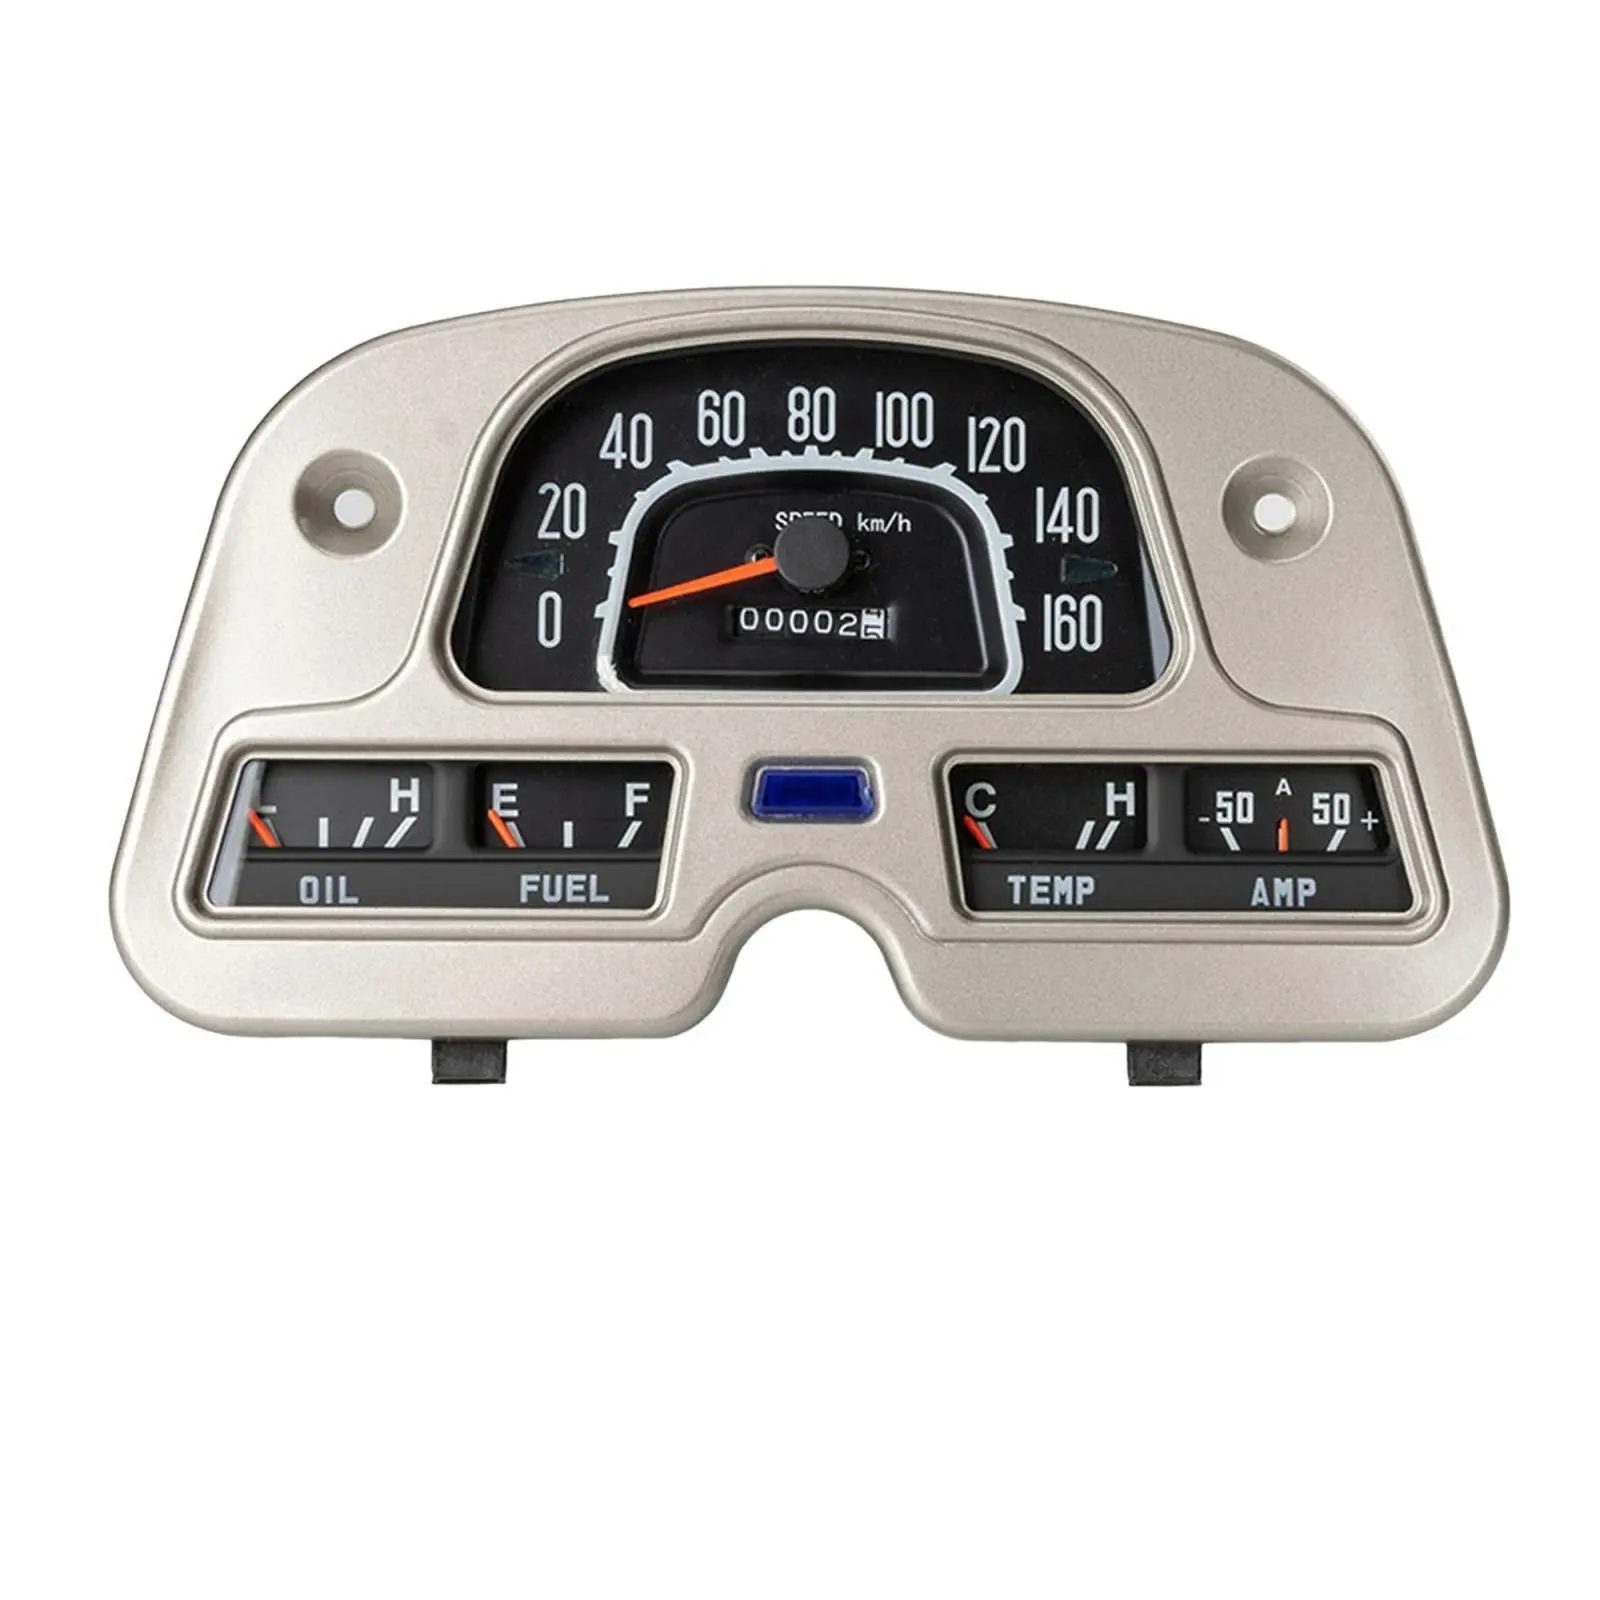 Speedometer Gauge Cluster For Toyota Land Cruiser FJ40 FJ43 FJ45 BJ40 BJ42 BJ43 BJ45 BJ46 HJ47 83100-60180 8310060180